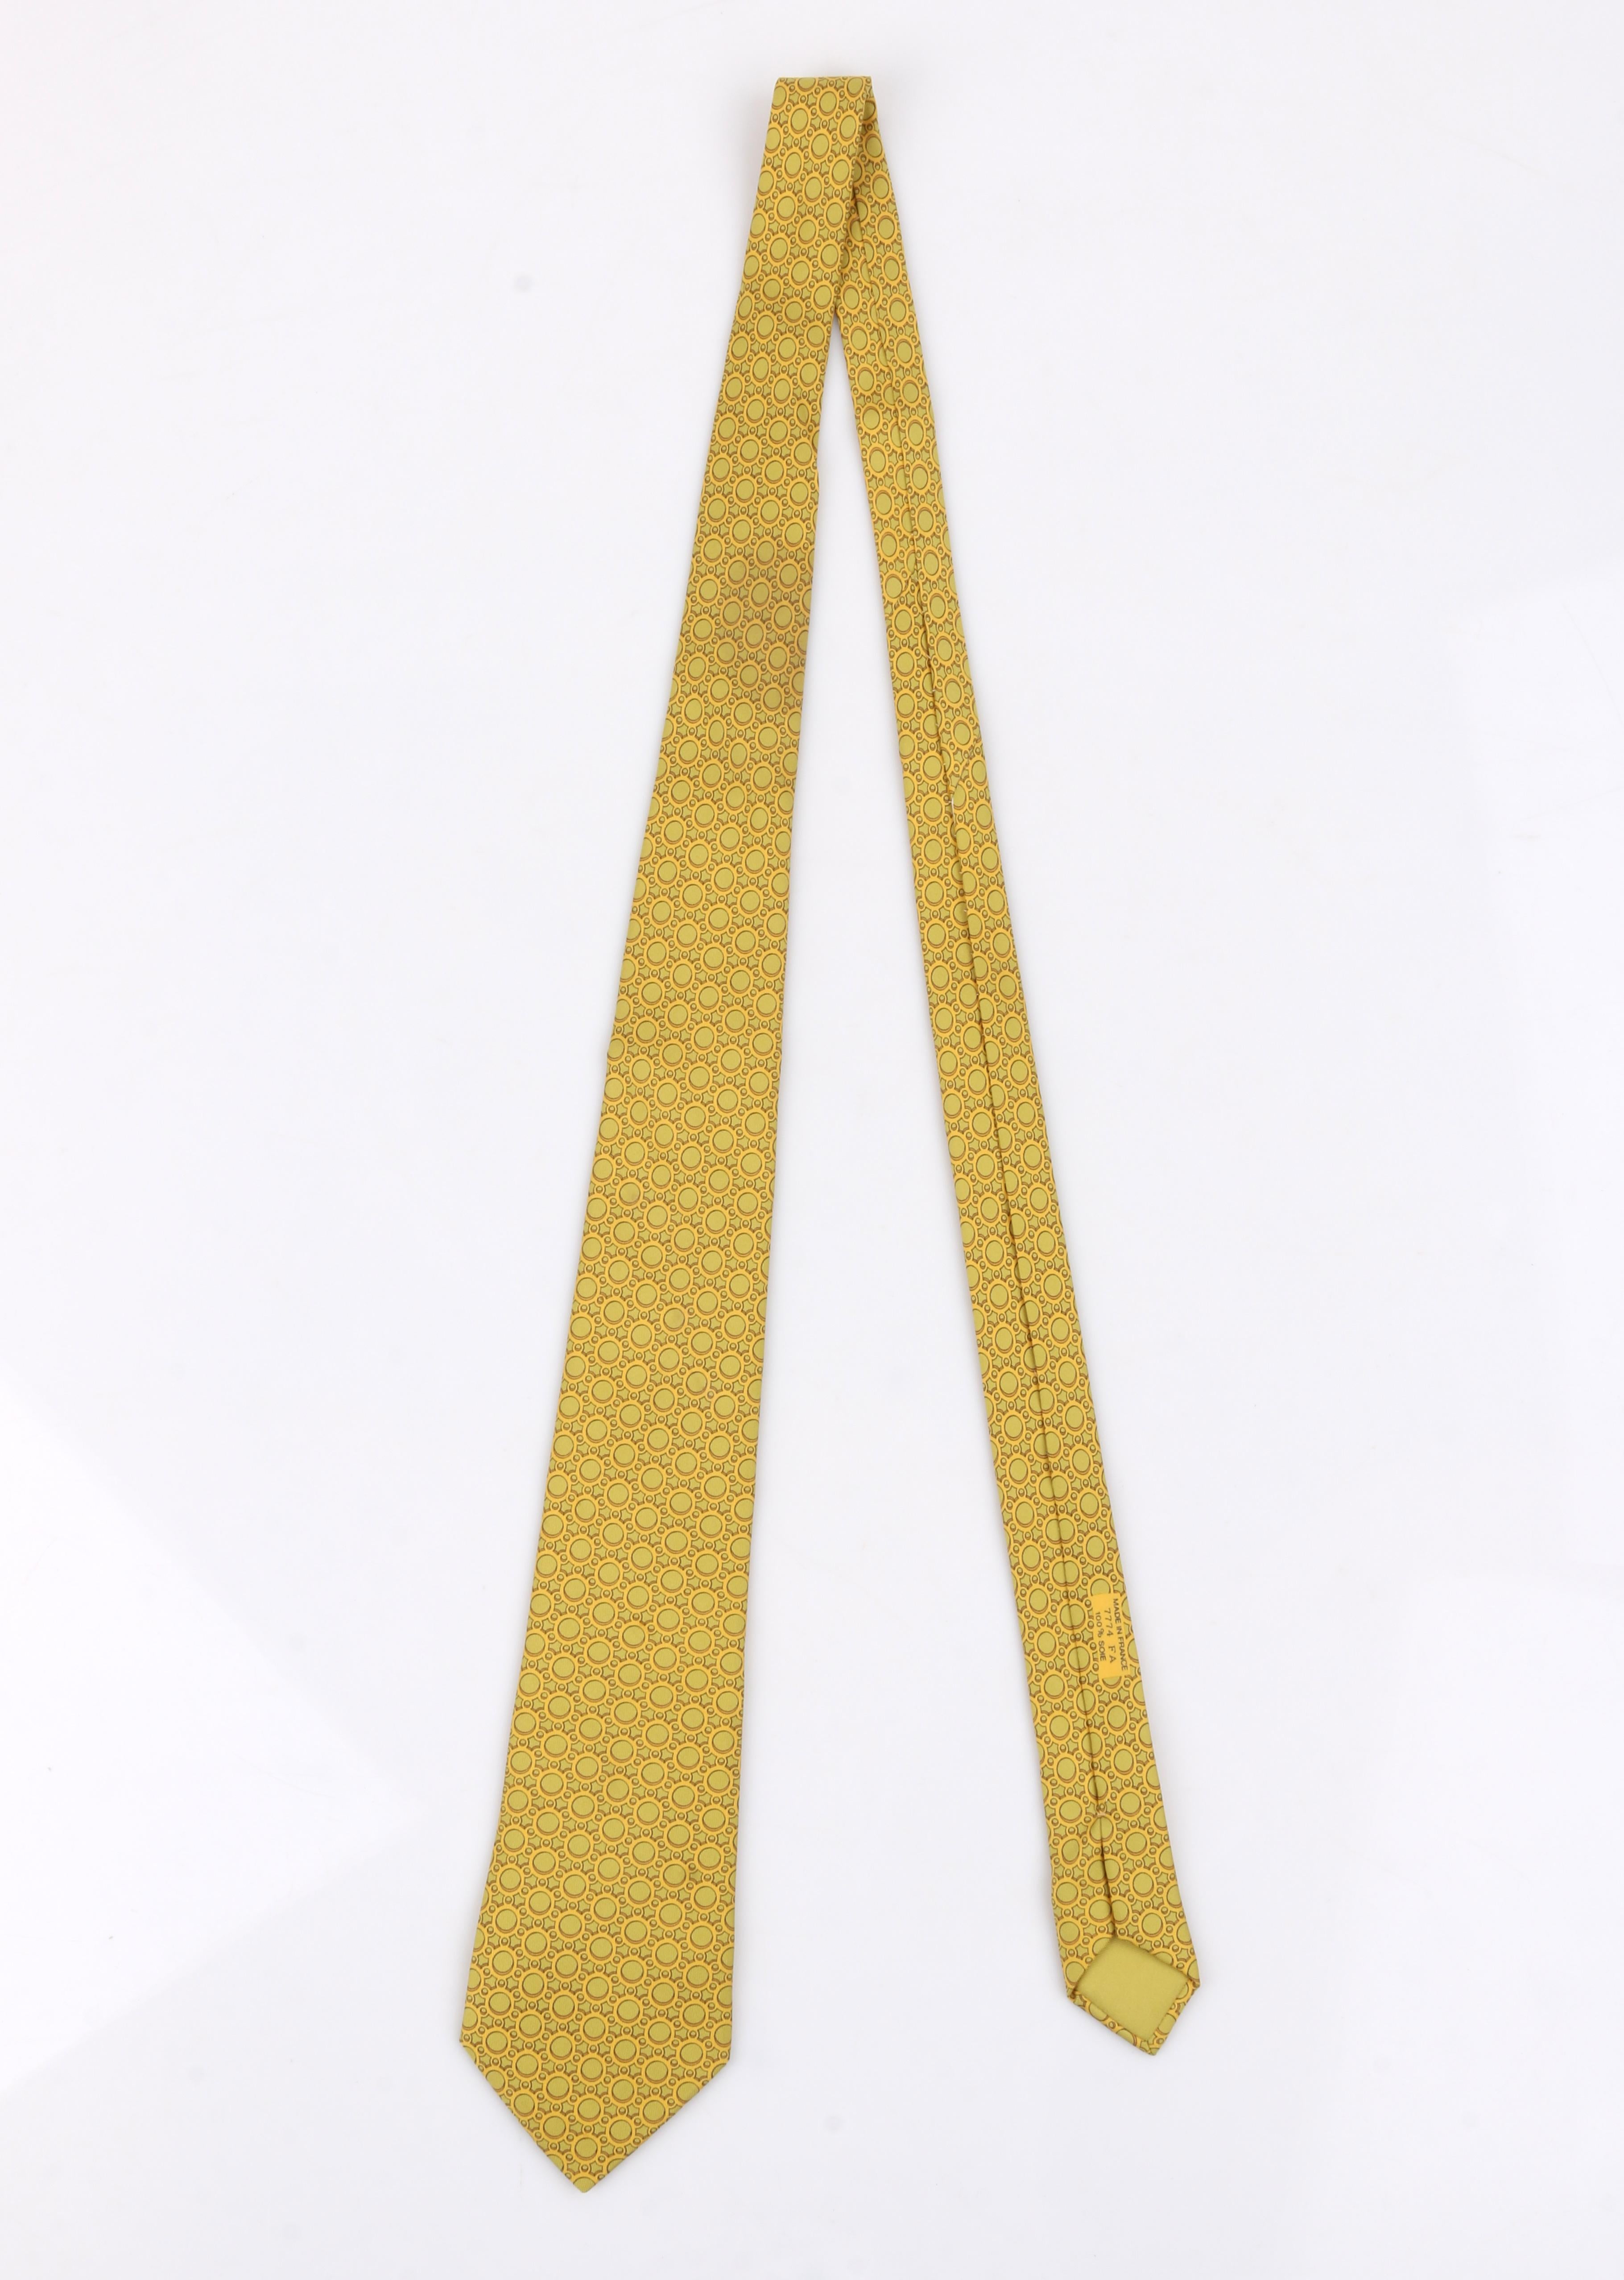 Orange HERMÈS Cravate plissée en soie à imprimé géométrique vert chartreuse et jaune avec 5 plis 7774 FA